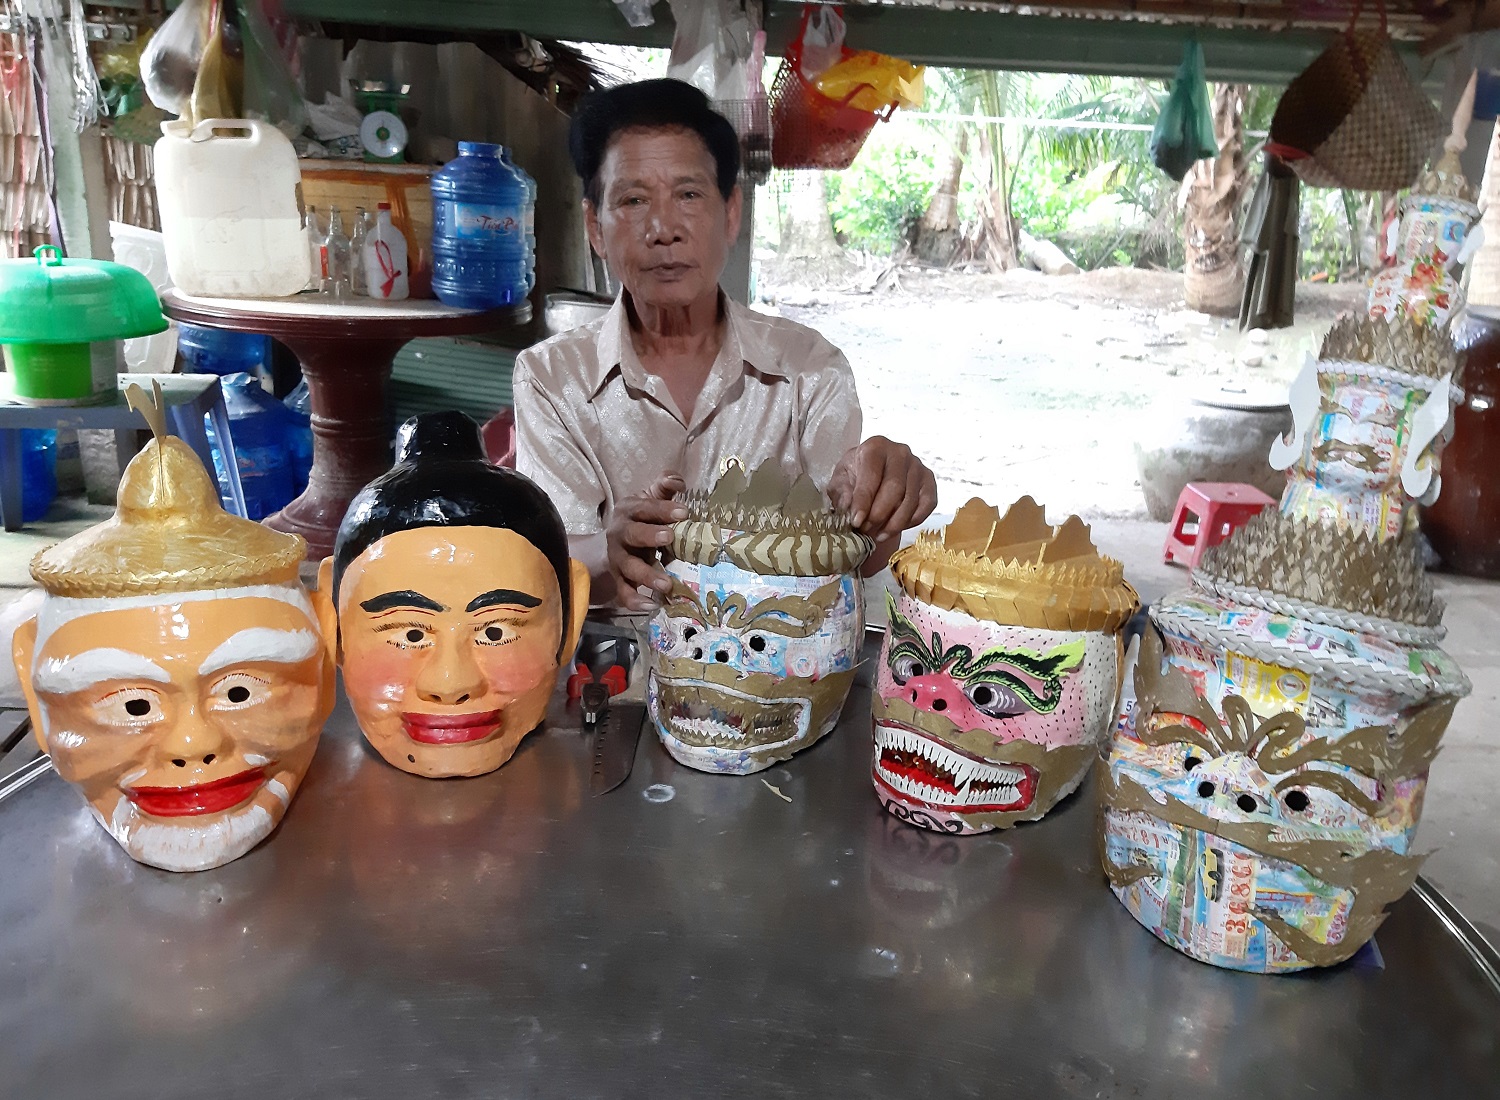 Văn hoá Khmer là một phần không thể thiếu trong di sản văn hóa Việt Nam. Với những nét độc đáo và tinh tế, văn hoá Khmer mang đến một khía cạnh rất mới mẻ và đa dạng cho văn hóa Việt. Hãy chiêm ngưỡng hình ảnh về văn hoá Khmer để trải nghiệm sự độc đáo và sâu sắc của nó.